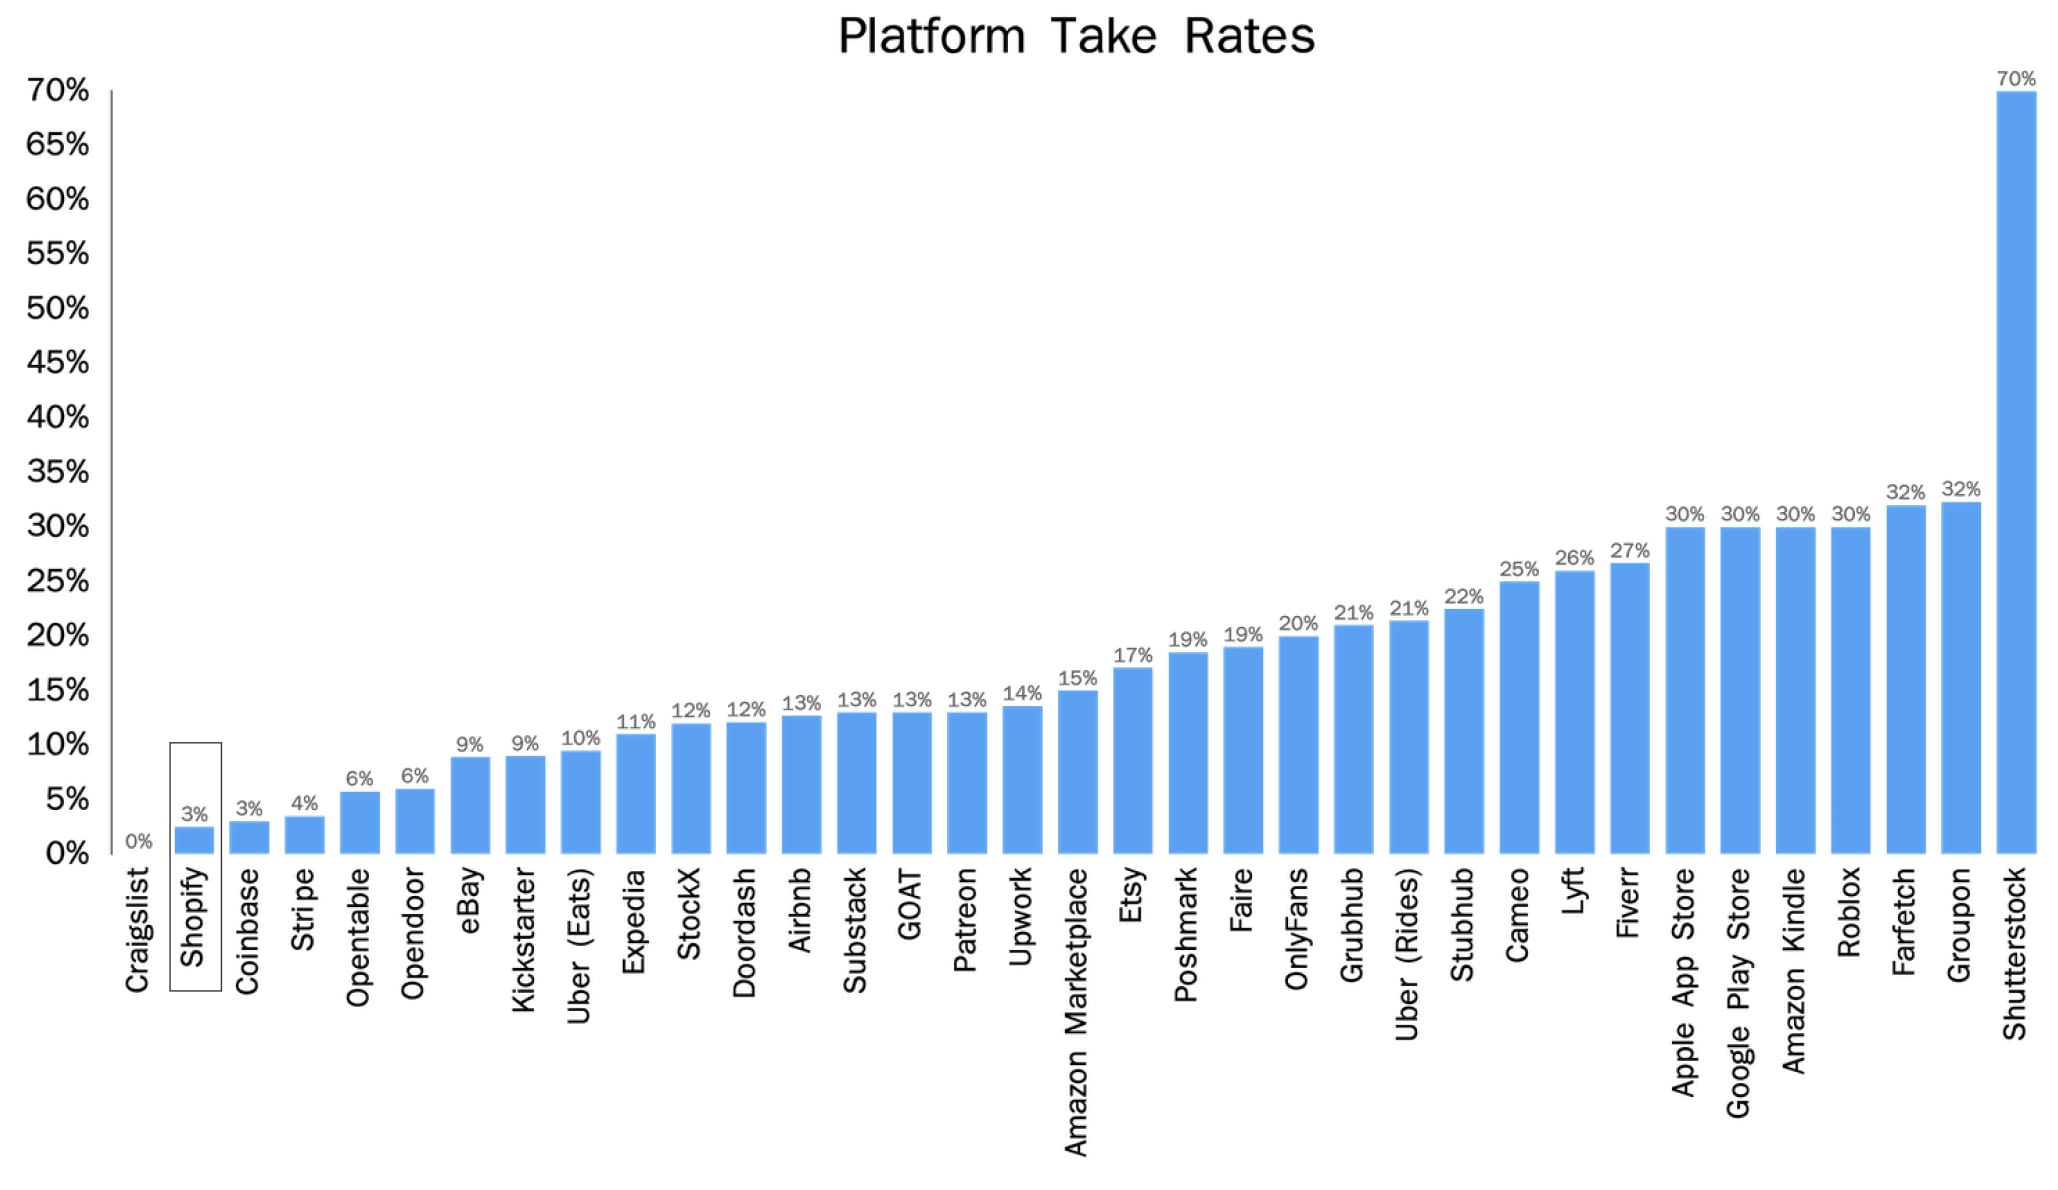 Der Vergleich der "Take Rates" verschiedener Plattformen zeigt, dass Shopify aktuell offenbar noch nicht so hohe Gebühren verlangen kann wie andere Marktteilnehmer